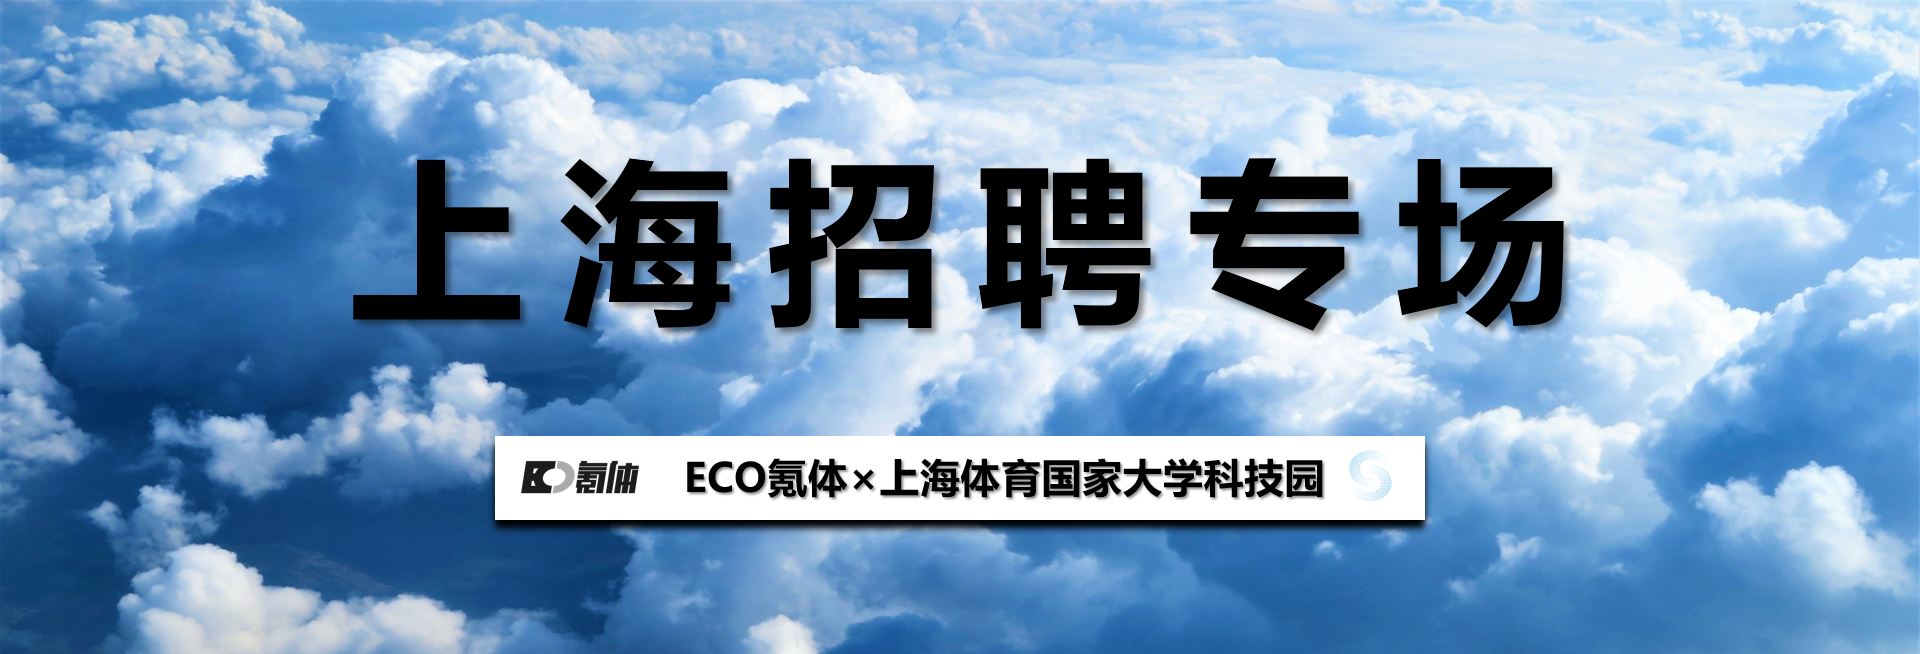 上海招聘专场 ECO氪体×上体科技园